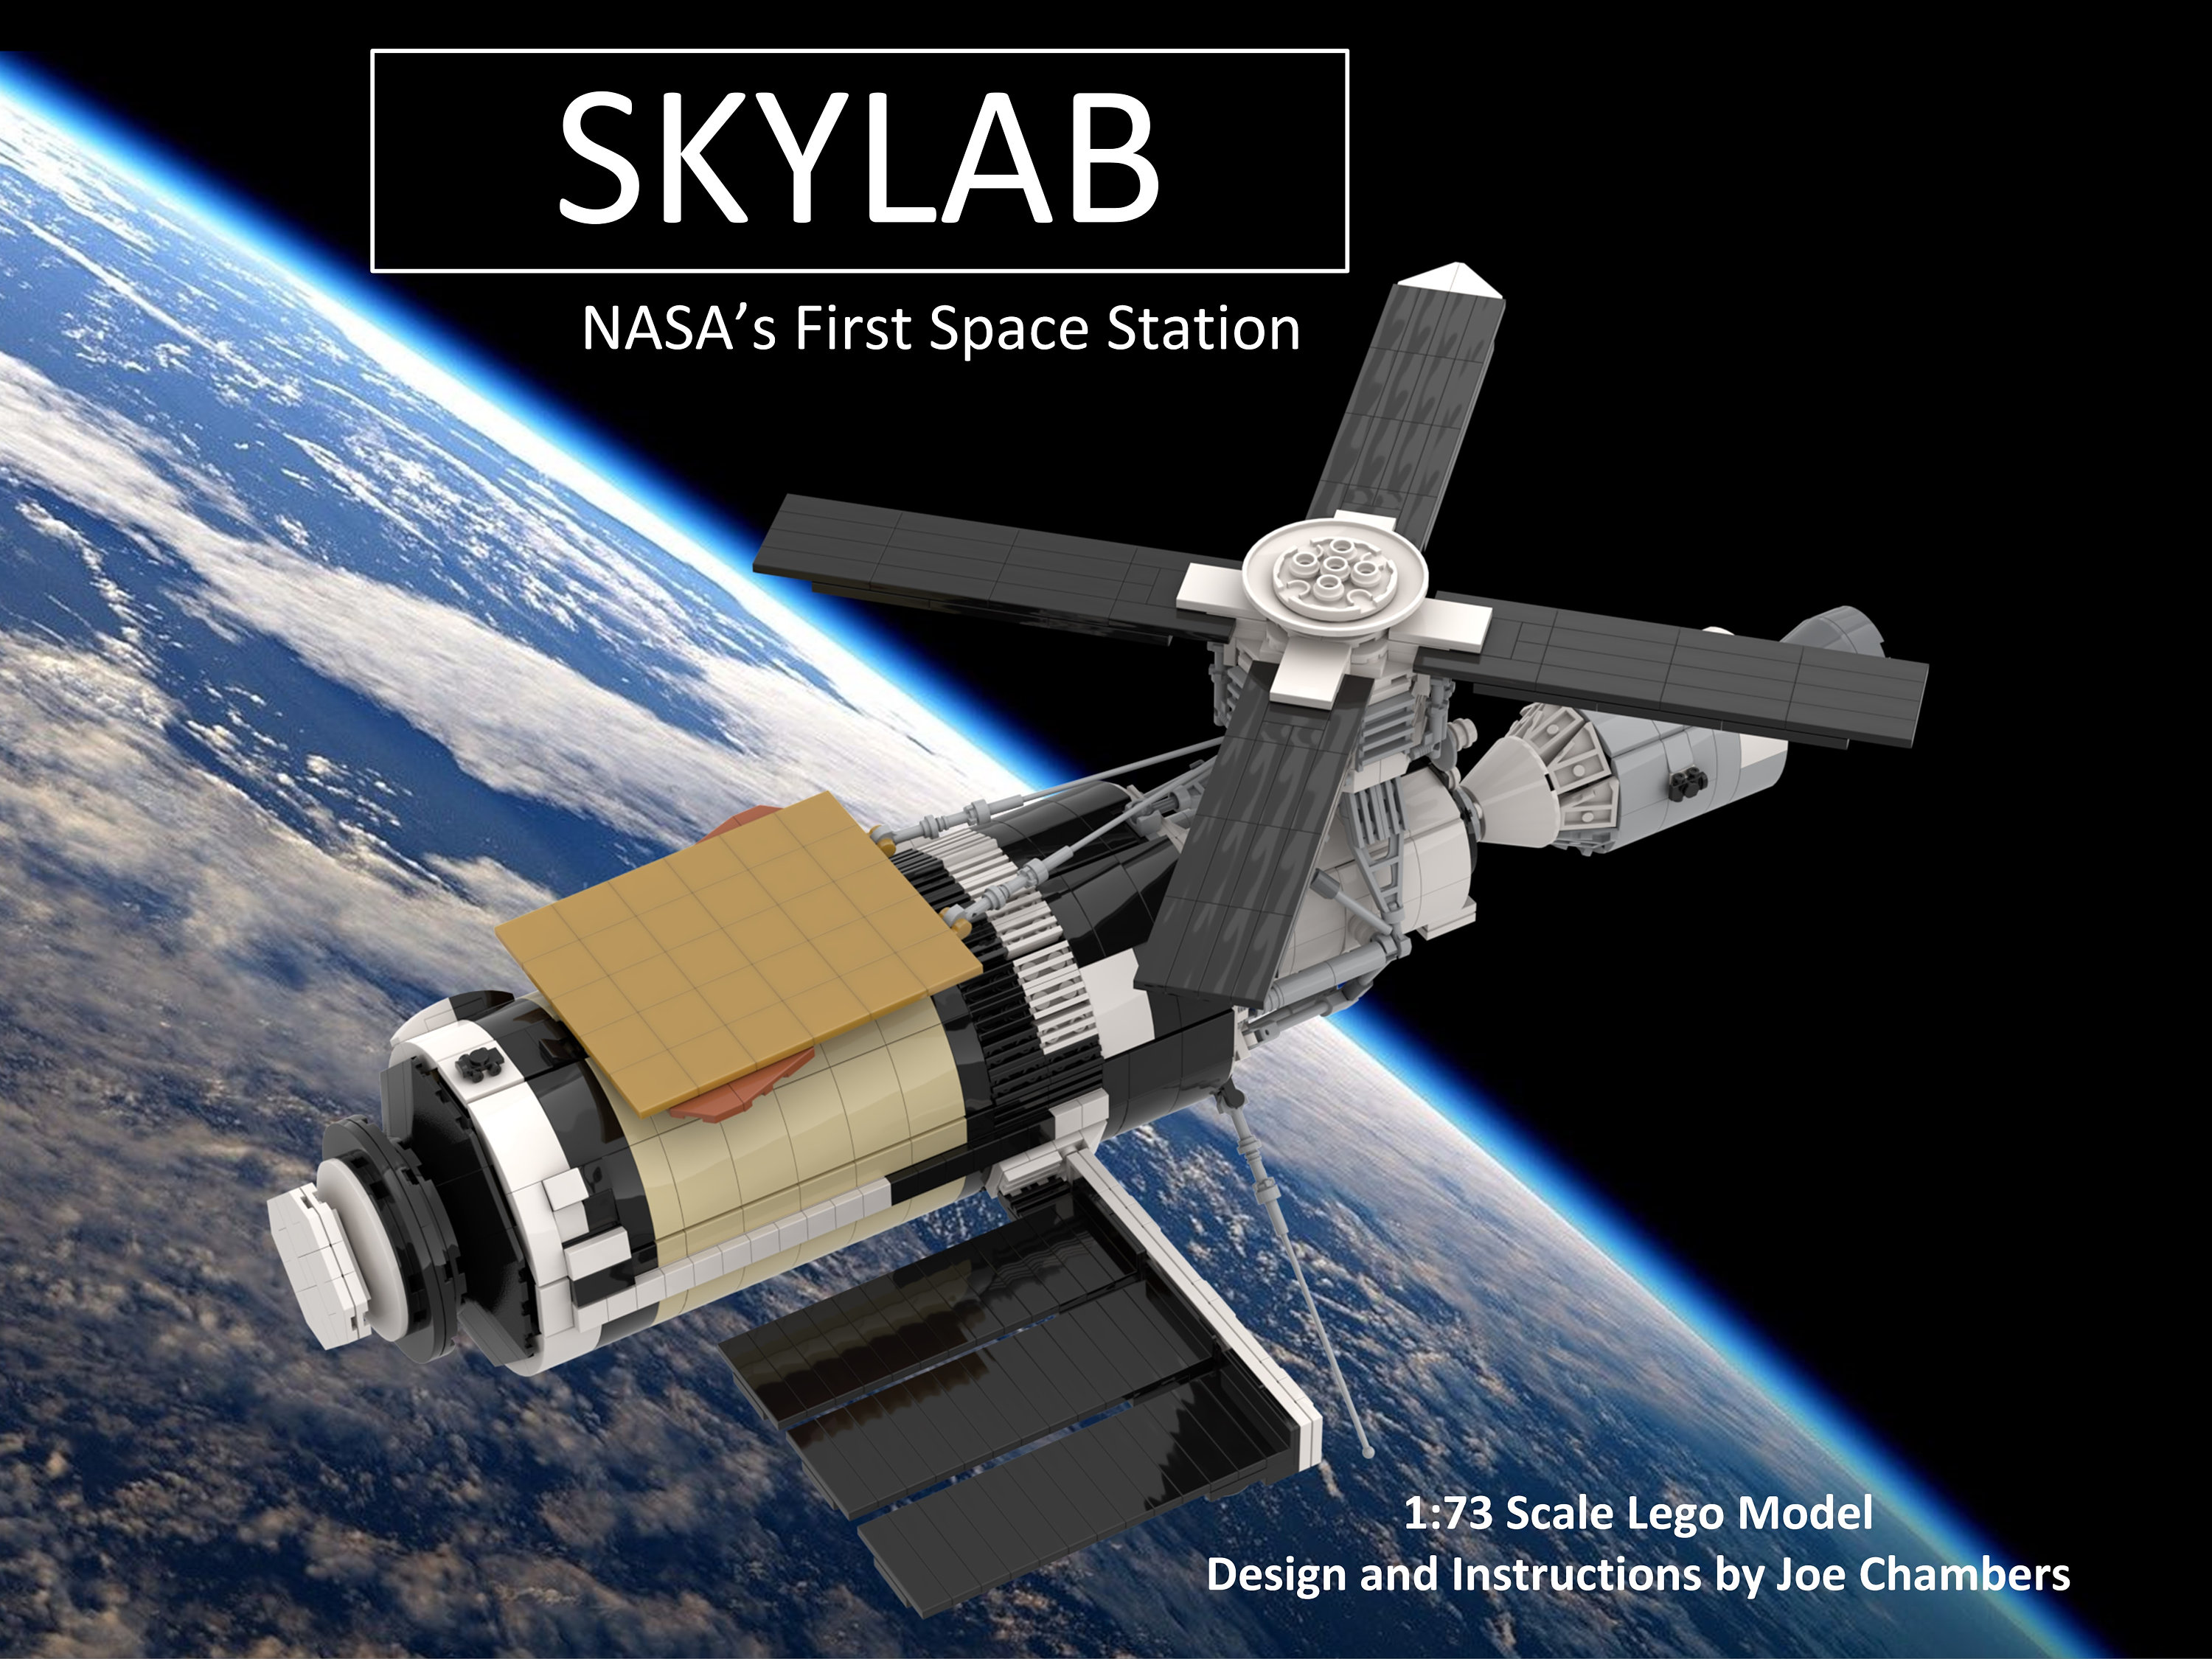 At bidrage parti tilgive Instructions for 1:73 Scale NASA Skylab MOC - Etsy